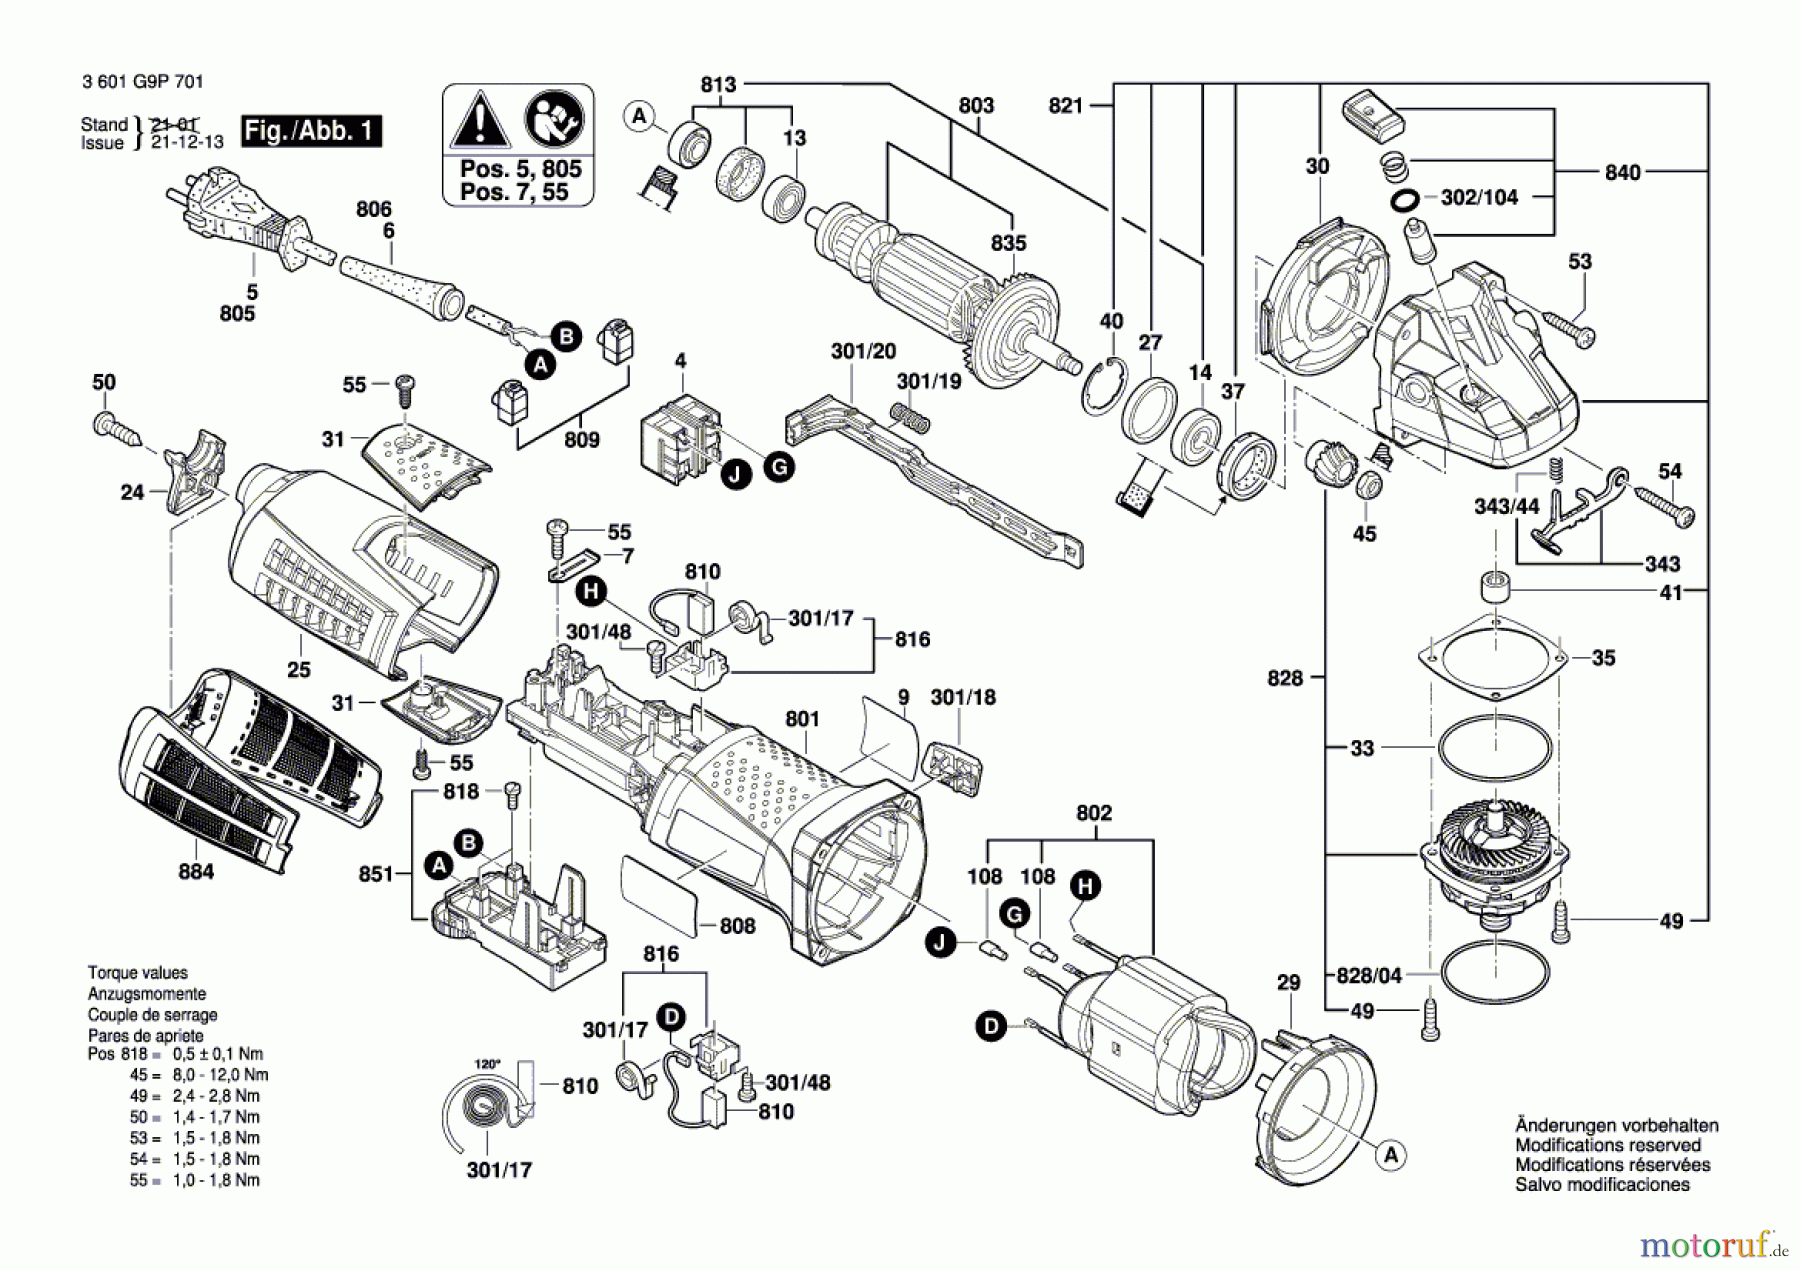  Bosch Werkzeug Winkelschleifer GWS19 CIE 115mm (3M) Seite 1